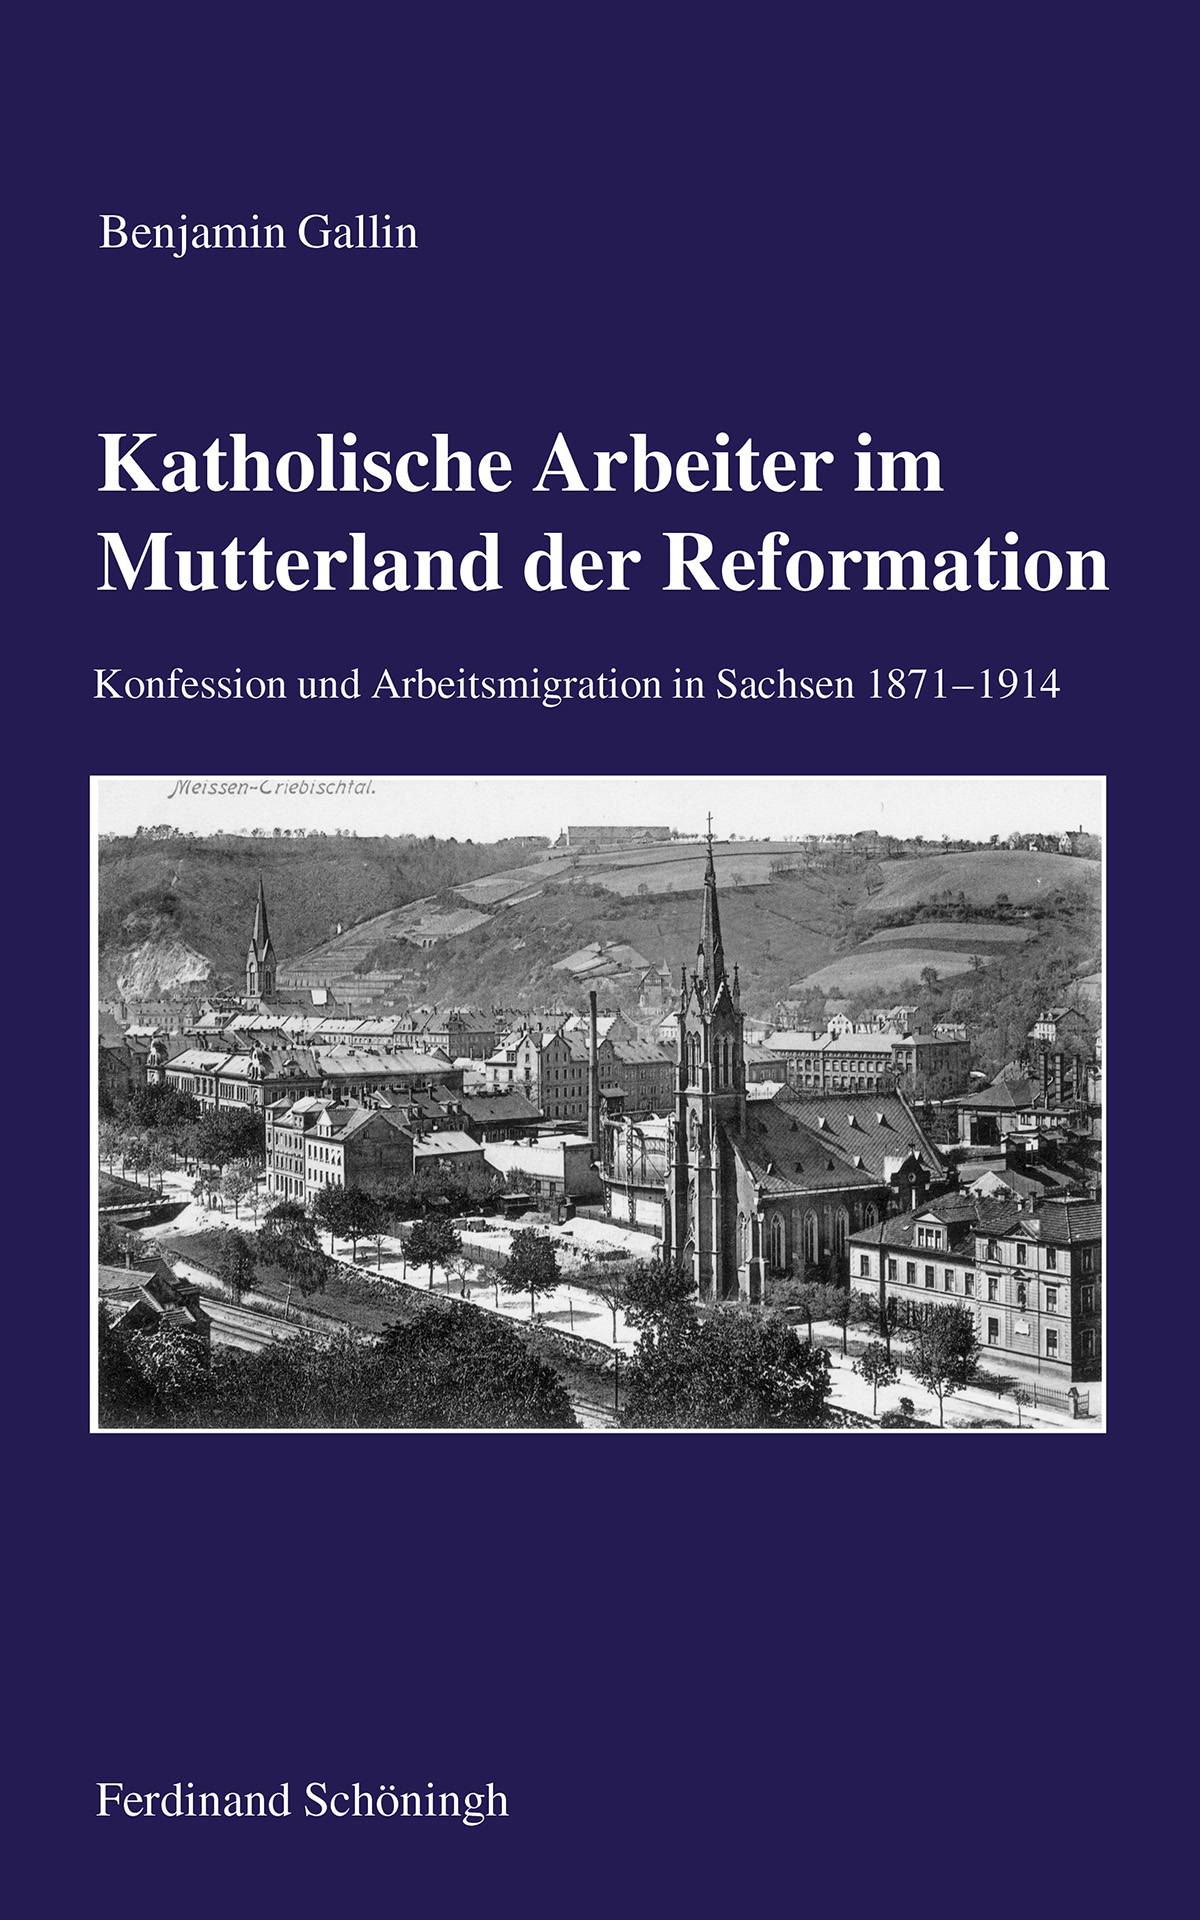 Benjamin Gallin: Katholische Arbeiter im Mutterland der Reformation. Konfession und Arbeitsmigration in Sachsen 1871–1914.